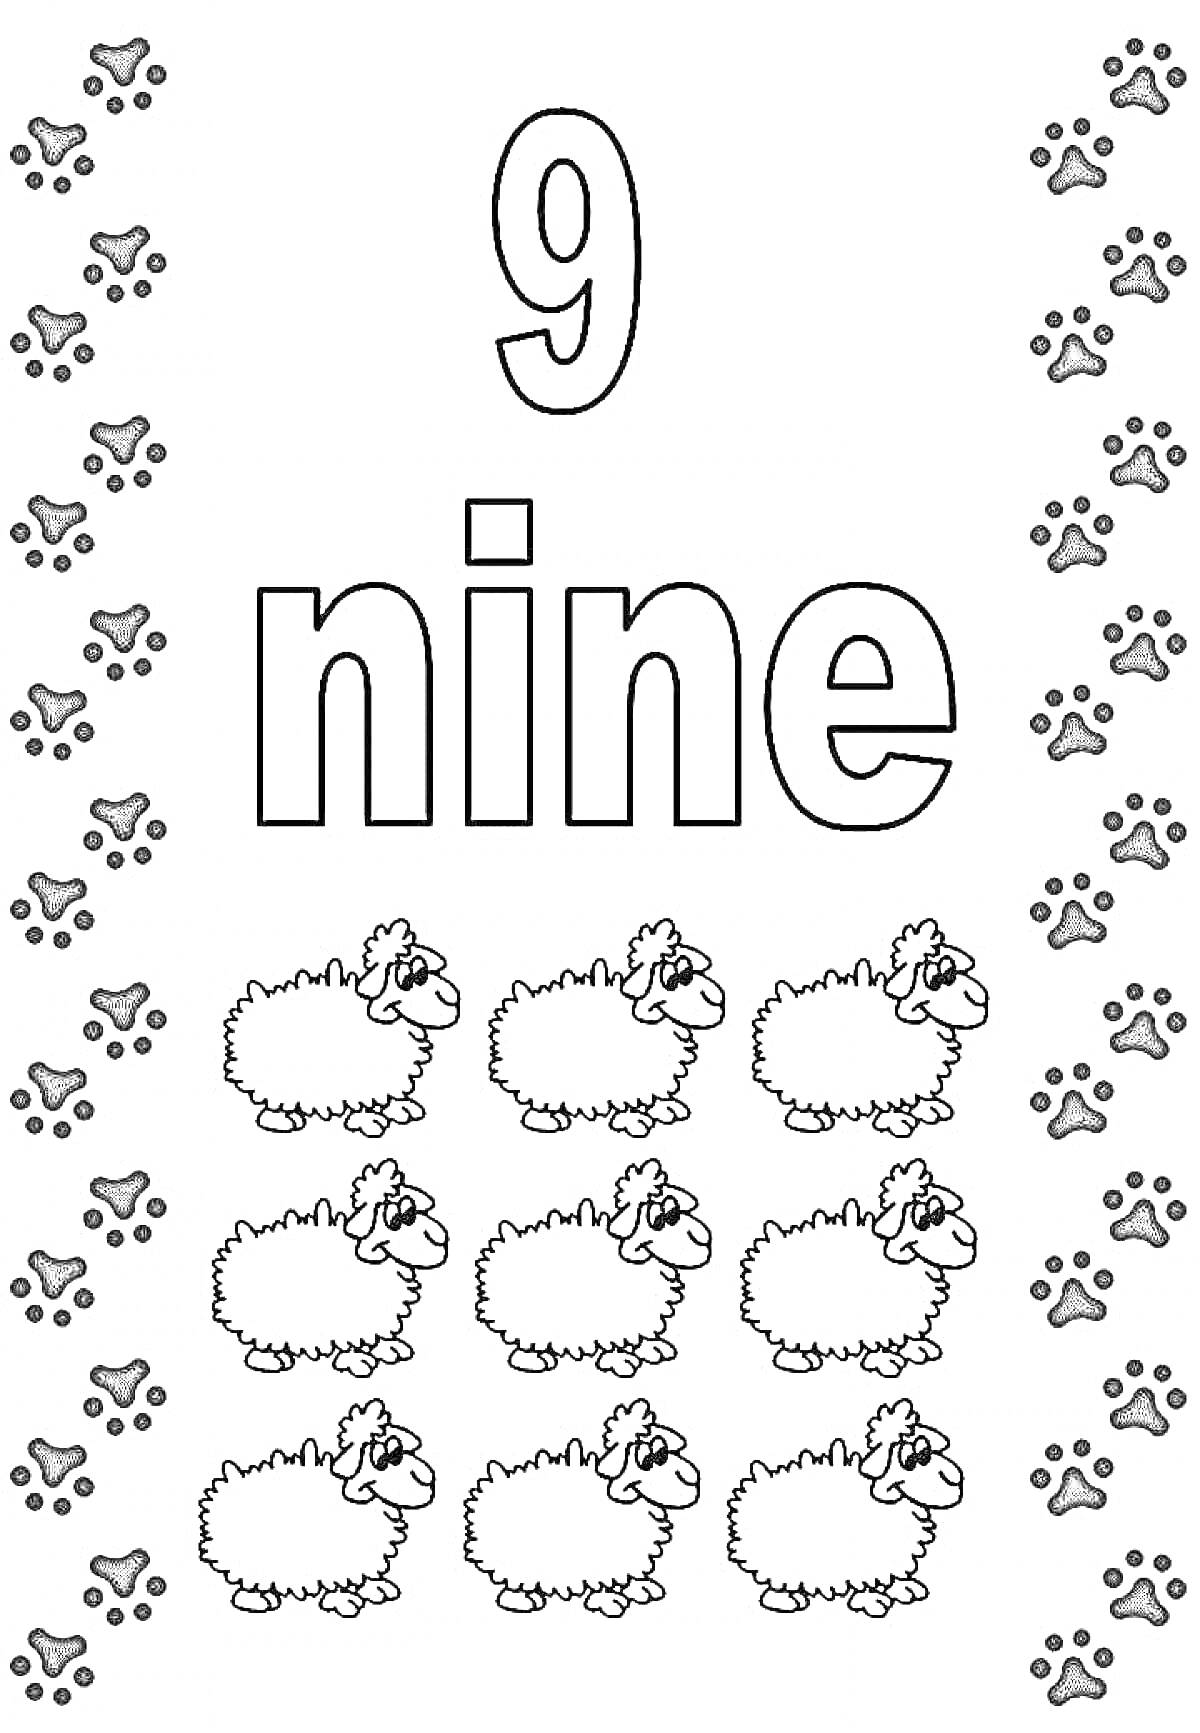 Цифра 9 с девятью овечками и следами лап по краям